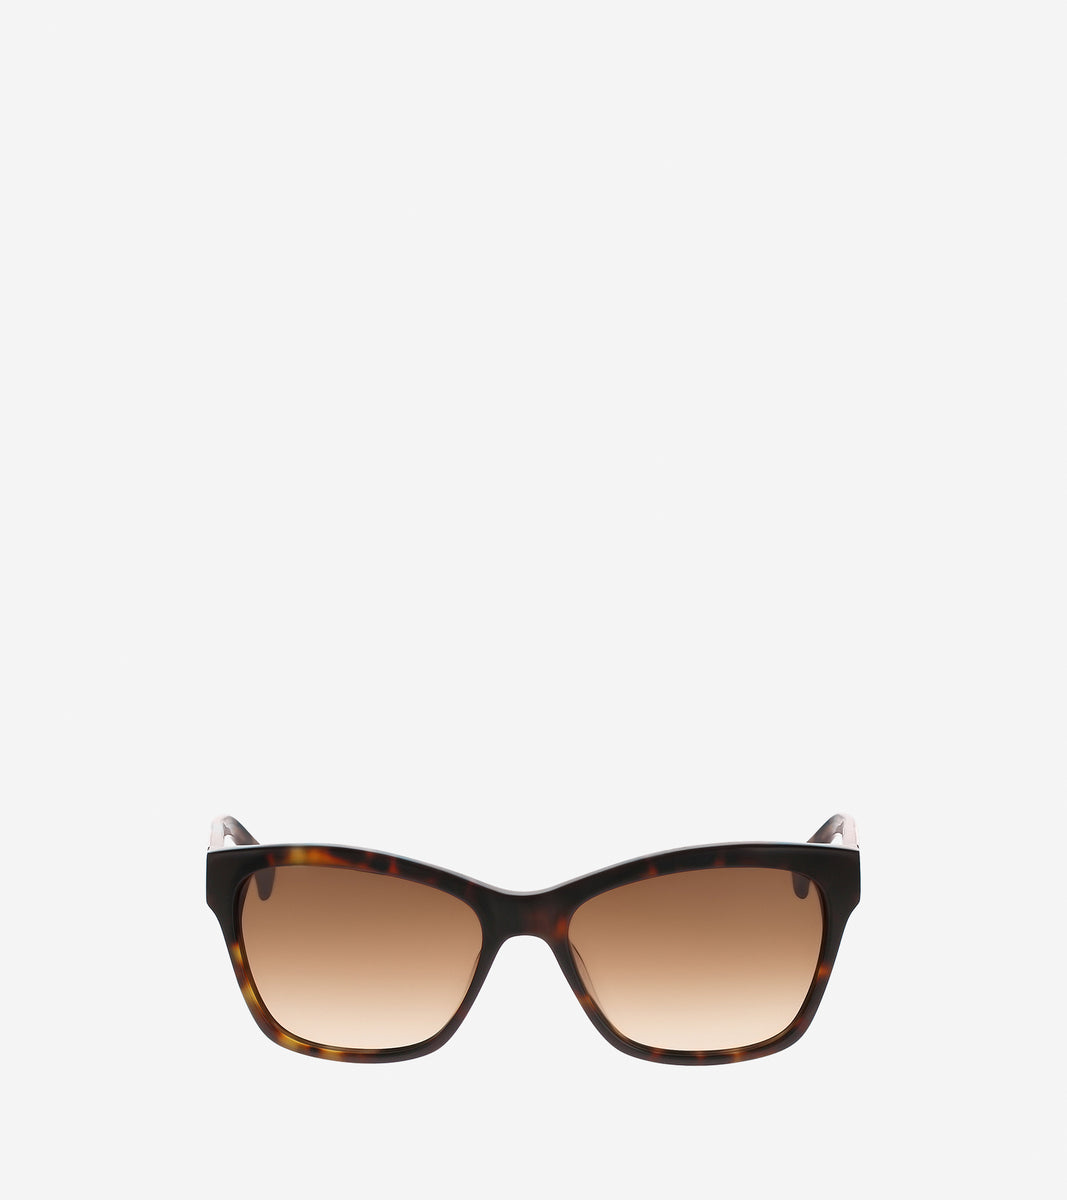 ColeHaan-Squared Cat Eye Sunglasses-sg5021-Soft Tortoise